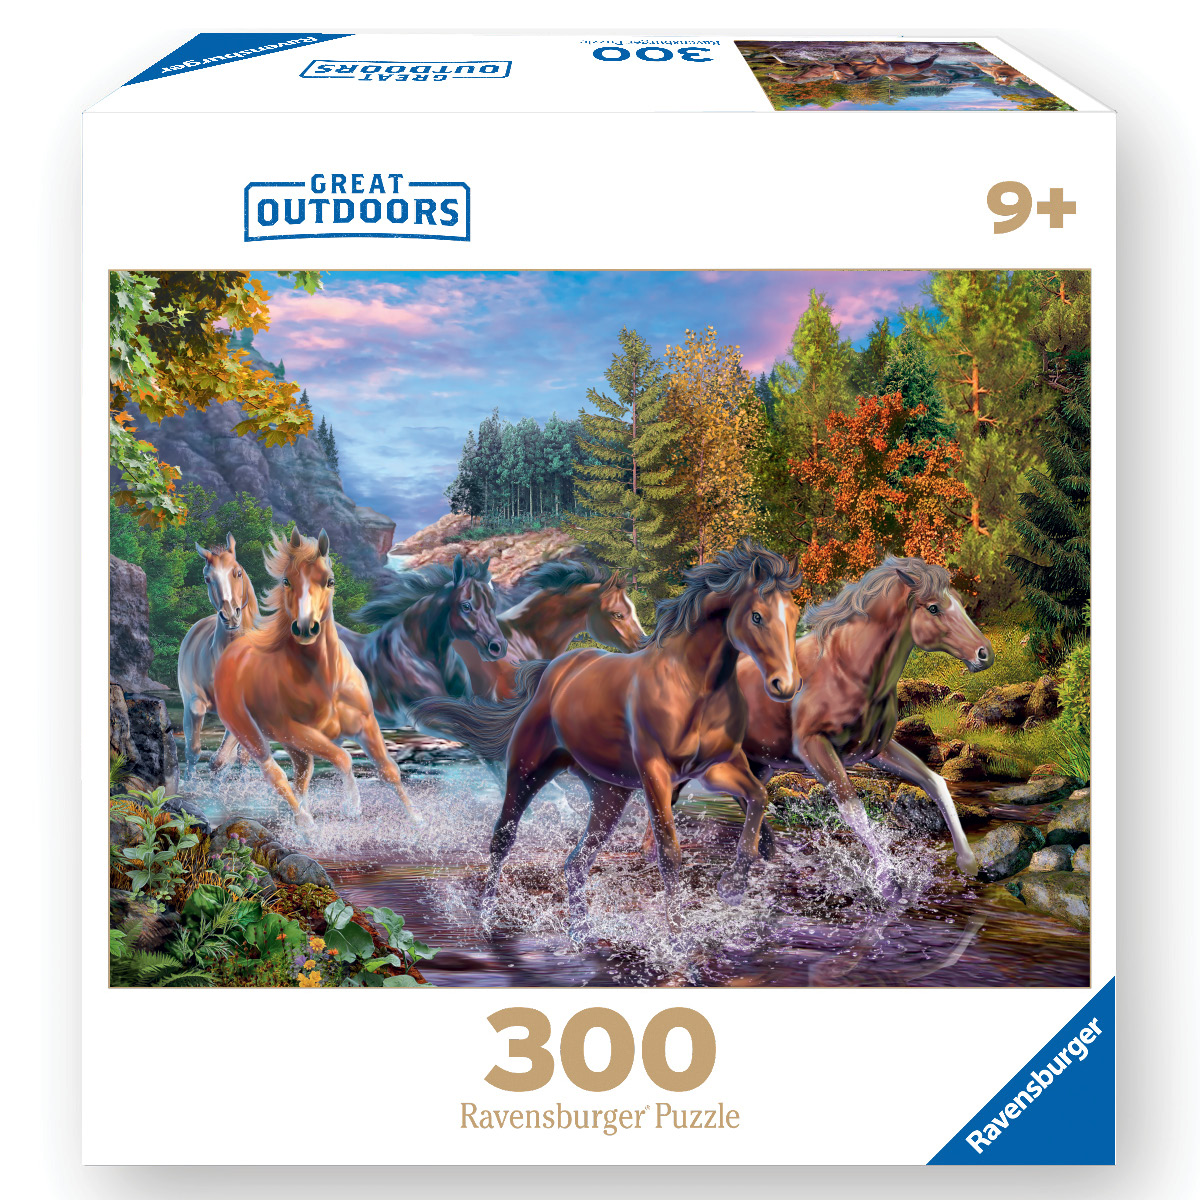 Ravensburger Woodland Friends 300 Piece Puzzle – The Puzzle